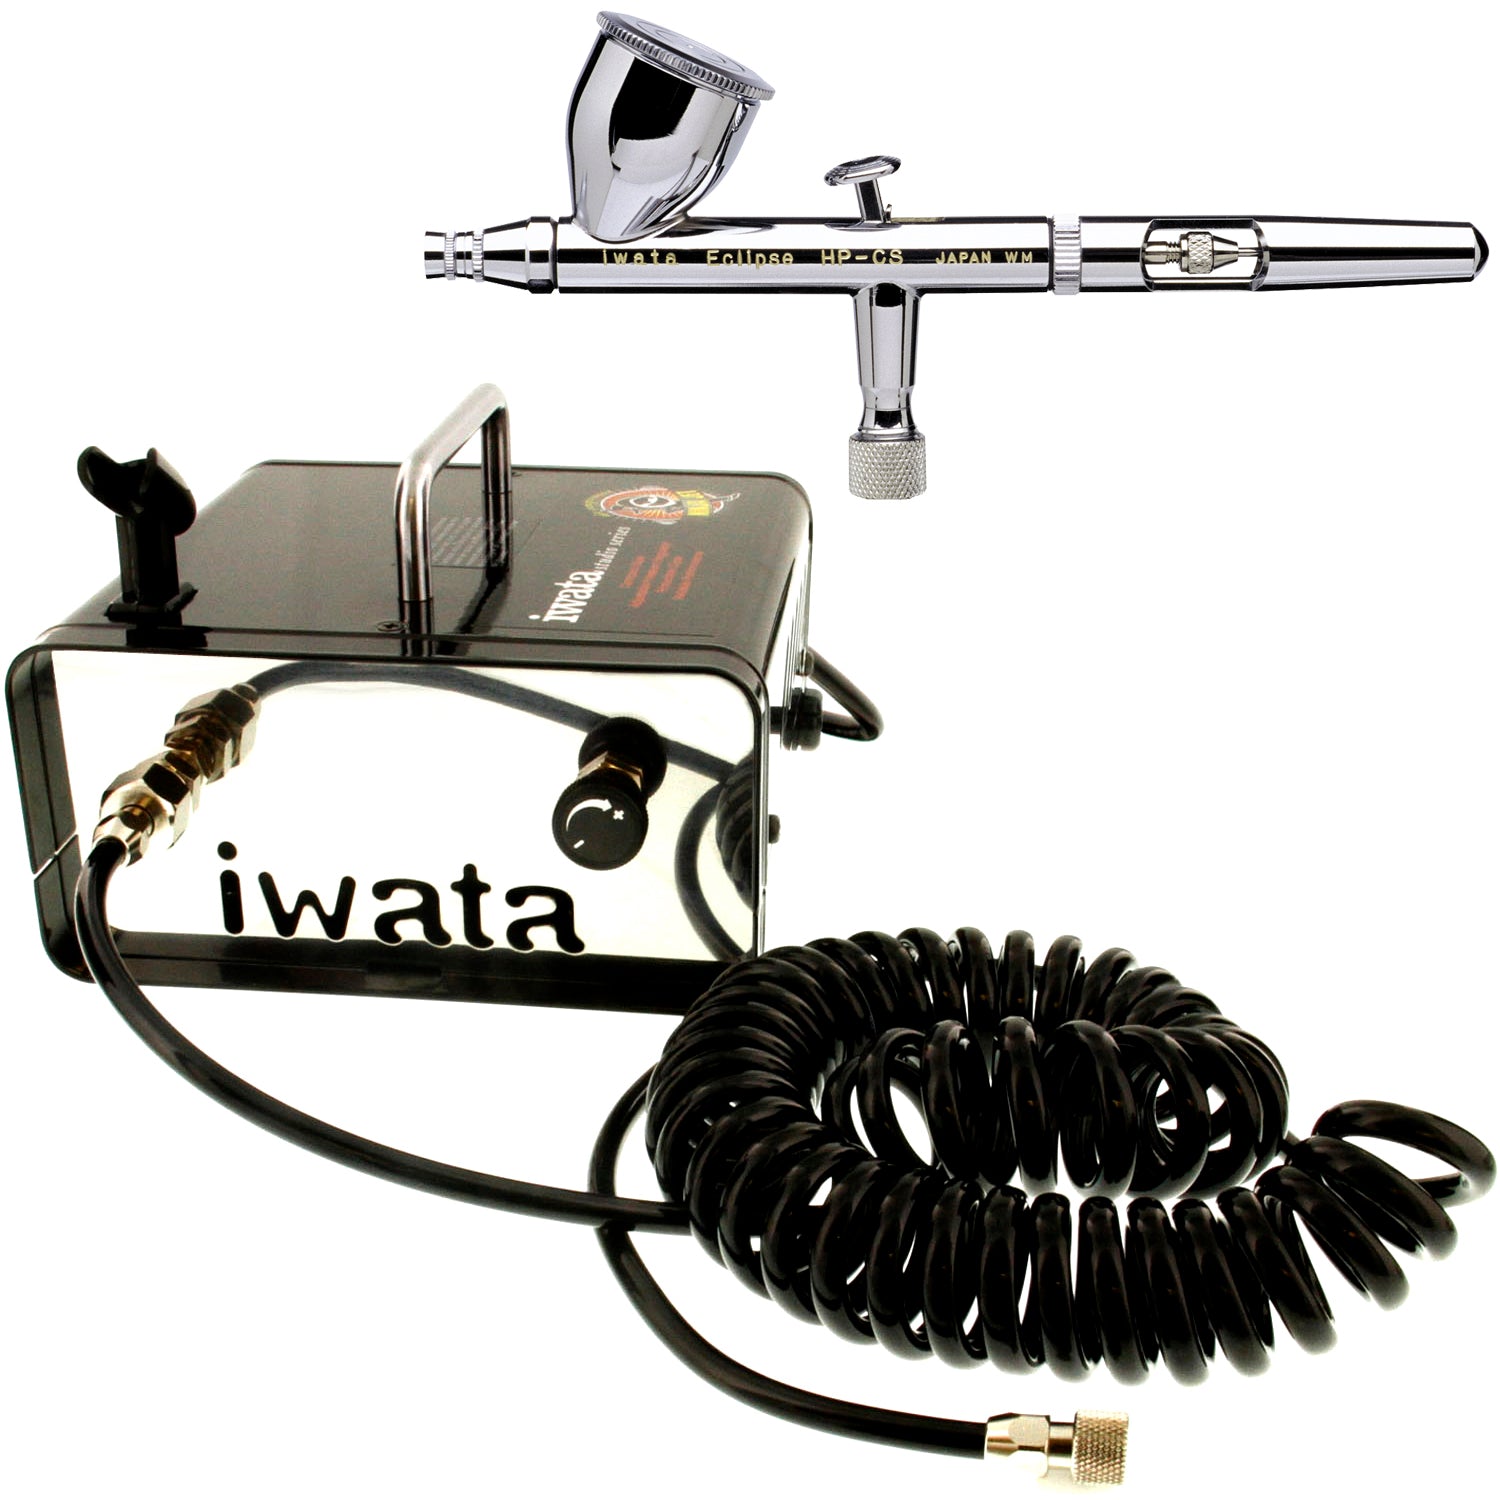 Iwata-Medea HP-CS .35mm Eclipse Airbrush w/ IS35 Ninja Jet Compressor